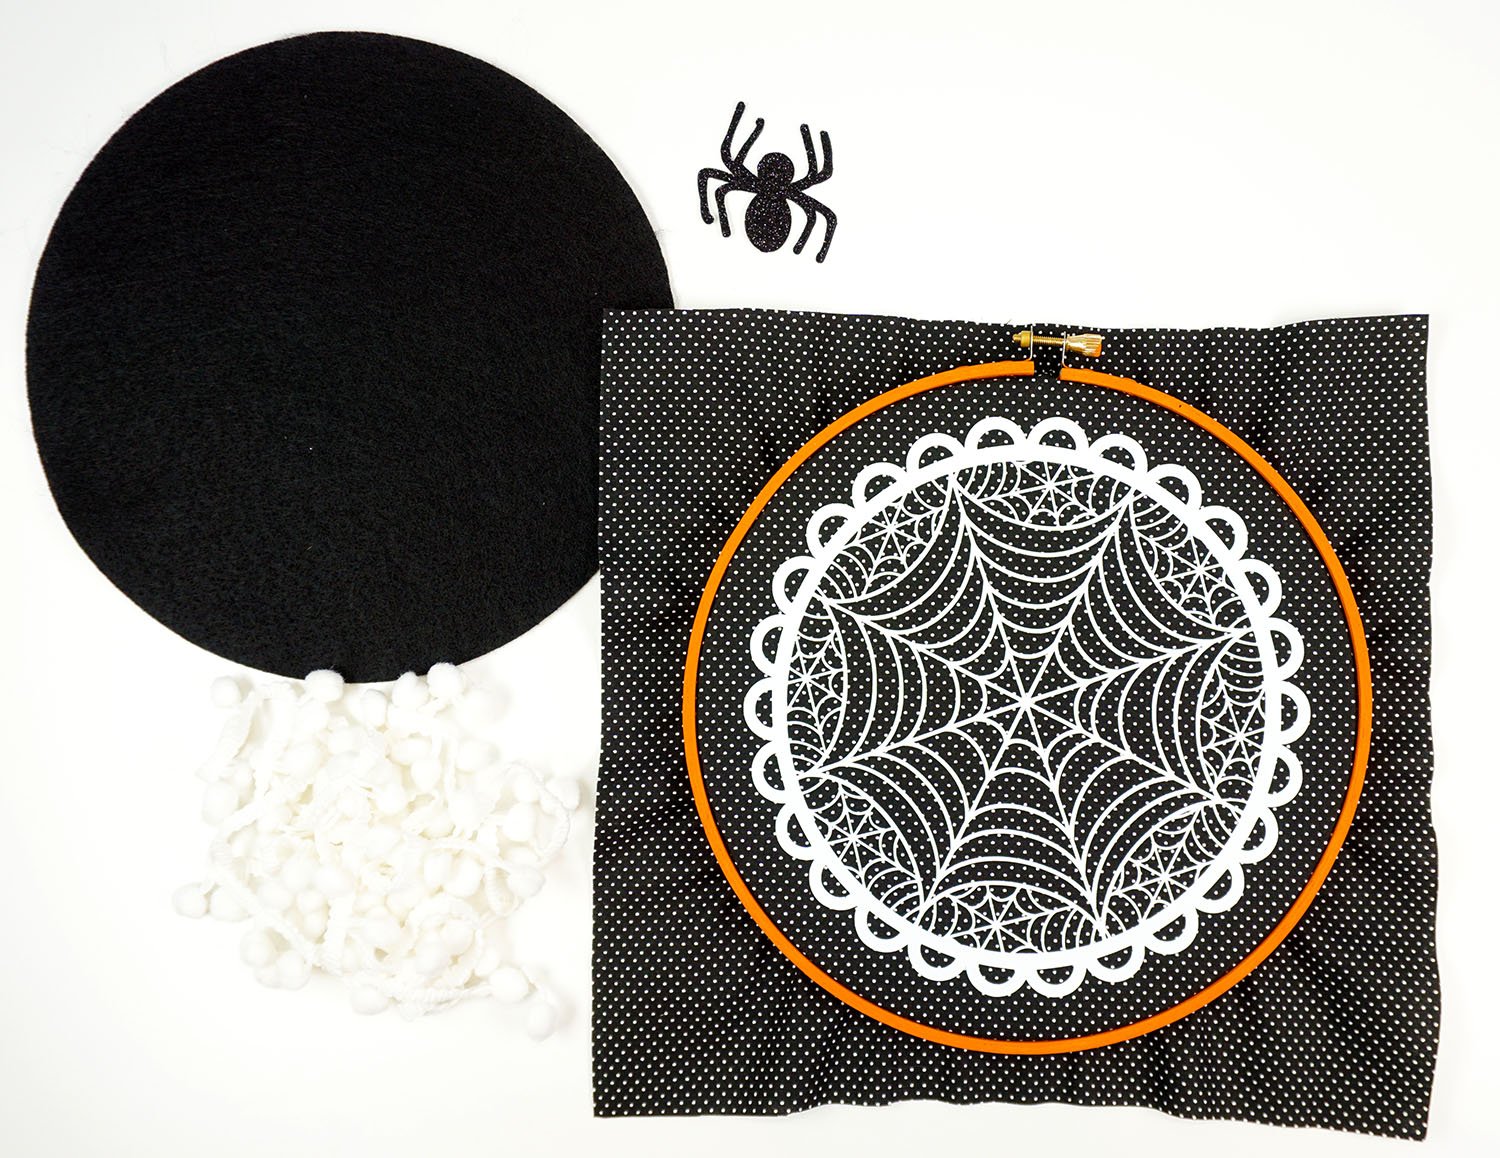 hoop laid over spider web design 